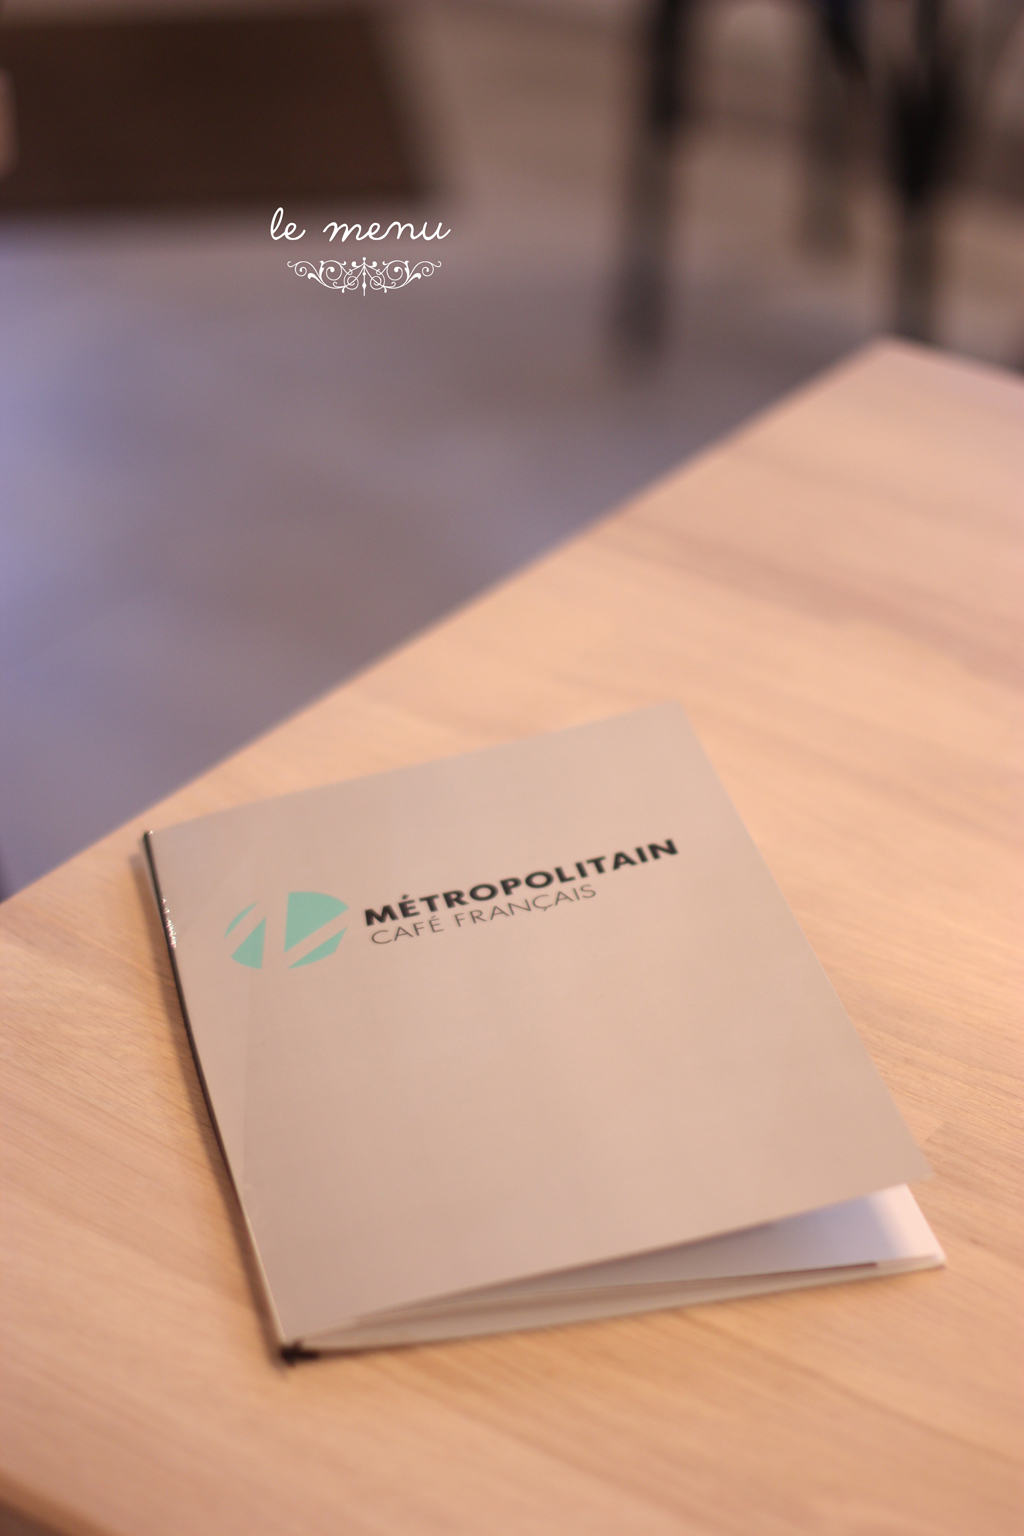 le menu at metropolitain